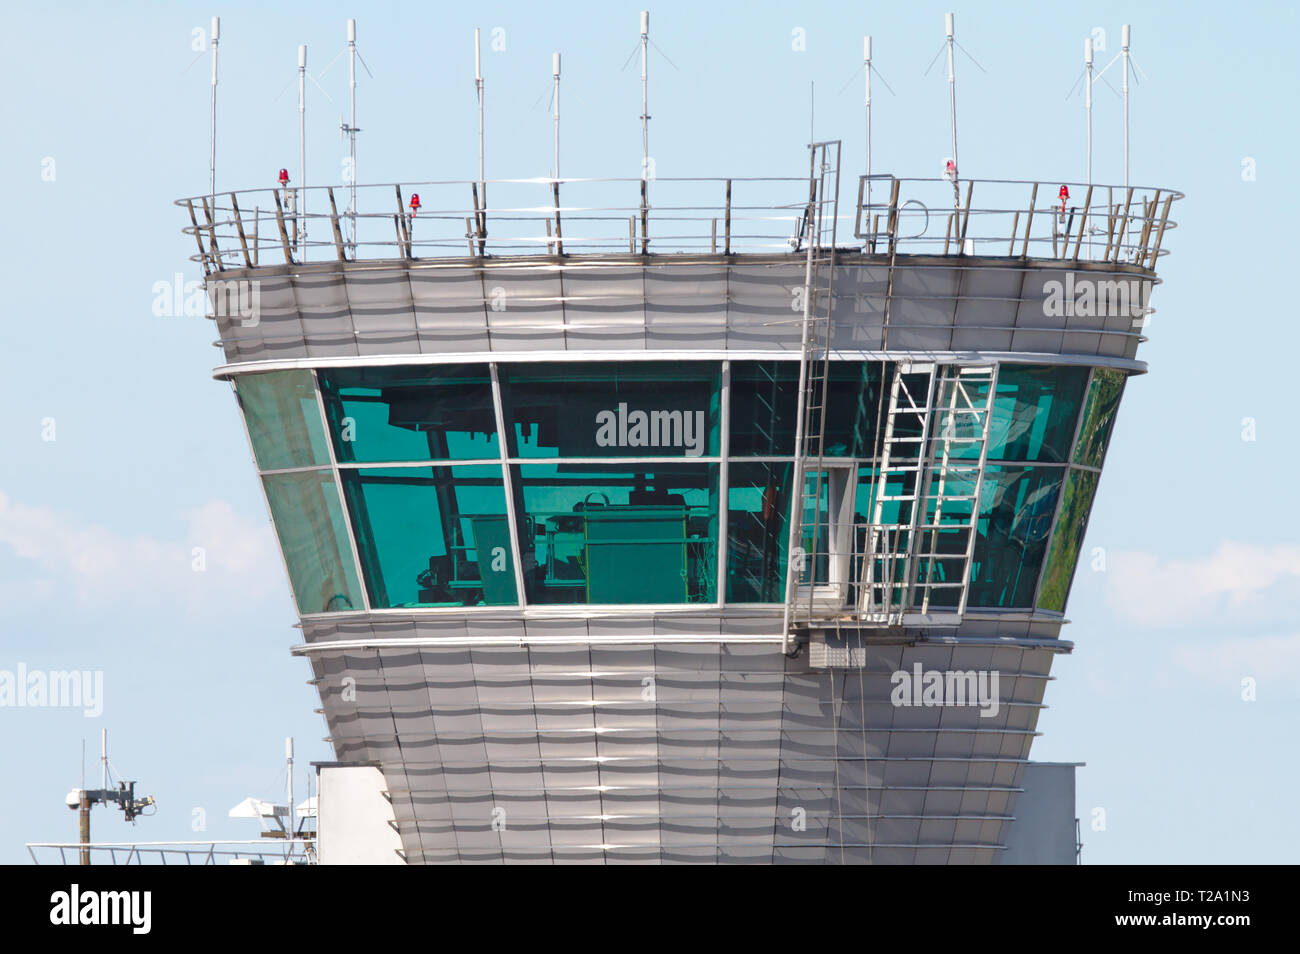 Tour de contrôle du trafic aérien de l'aéroport Helsinki-Vantaa. Photo prise 16.06.2018 à Vantaa, Finlande Banque D'Images